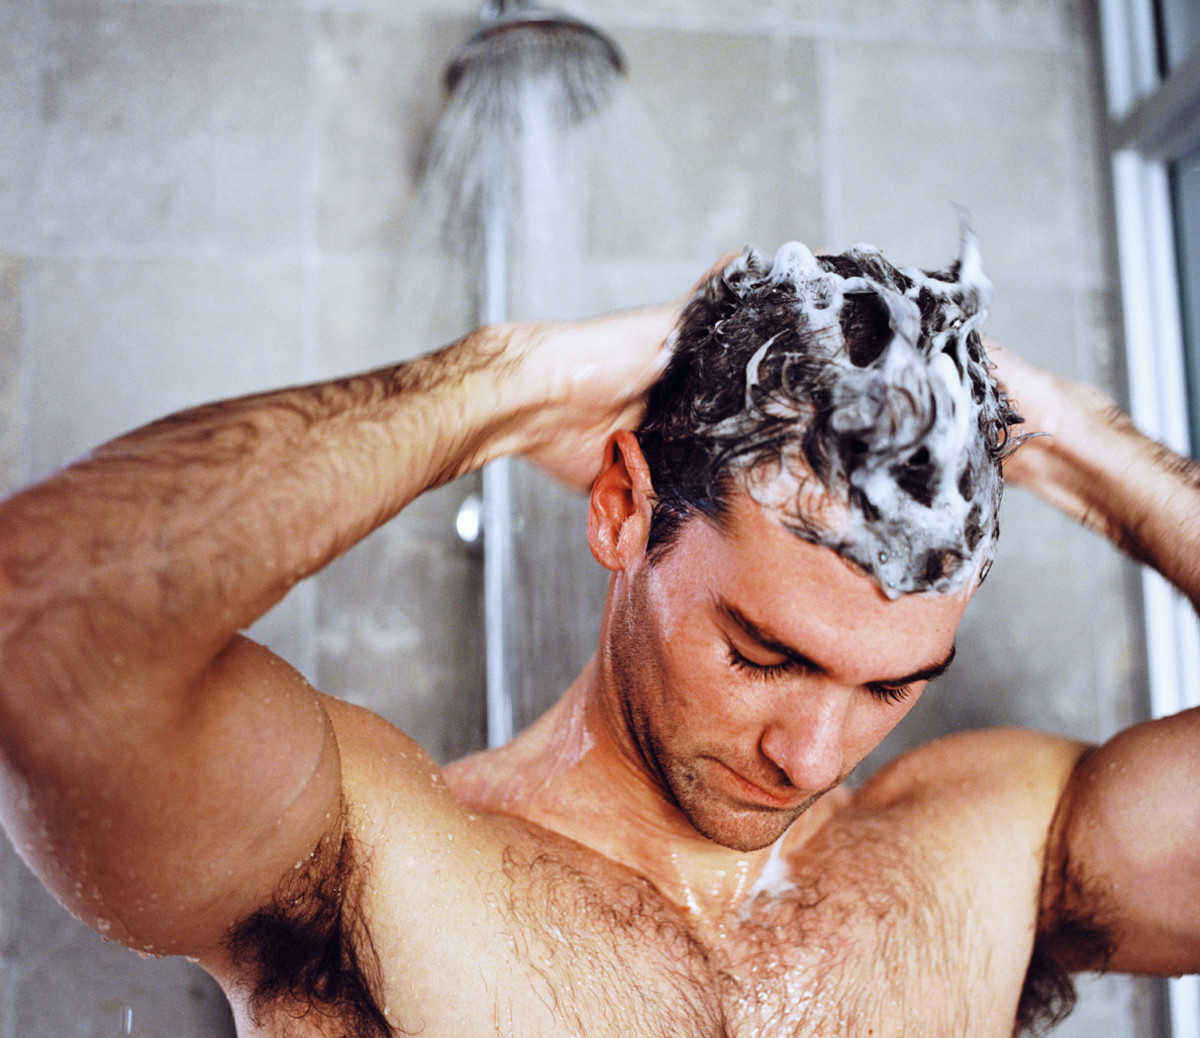 teller Phalanx Weekendtas Best Shampoo for Dry Hair | Men's Journal - Men's Journal